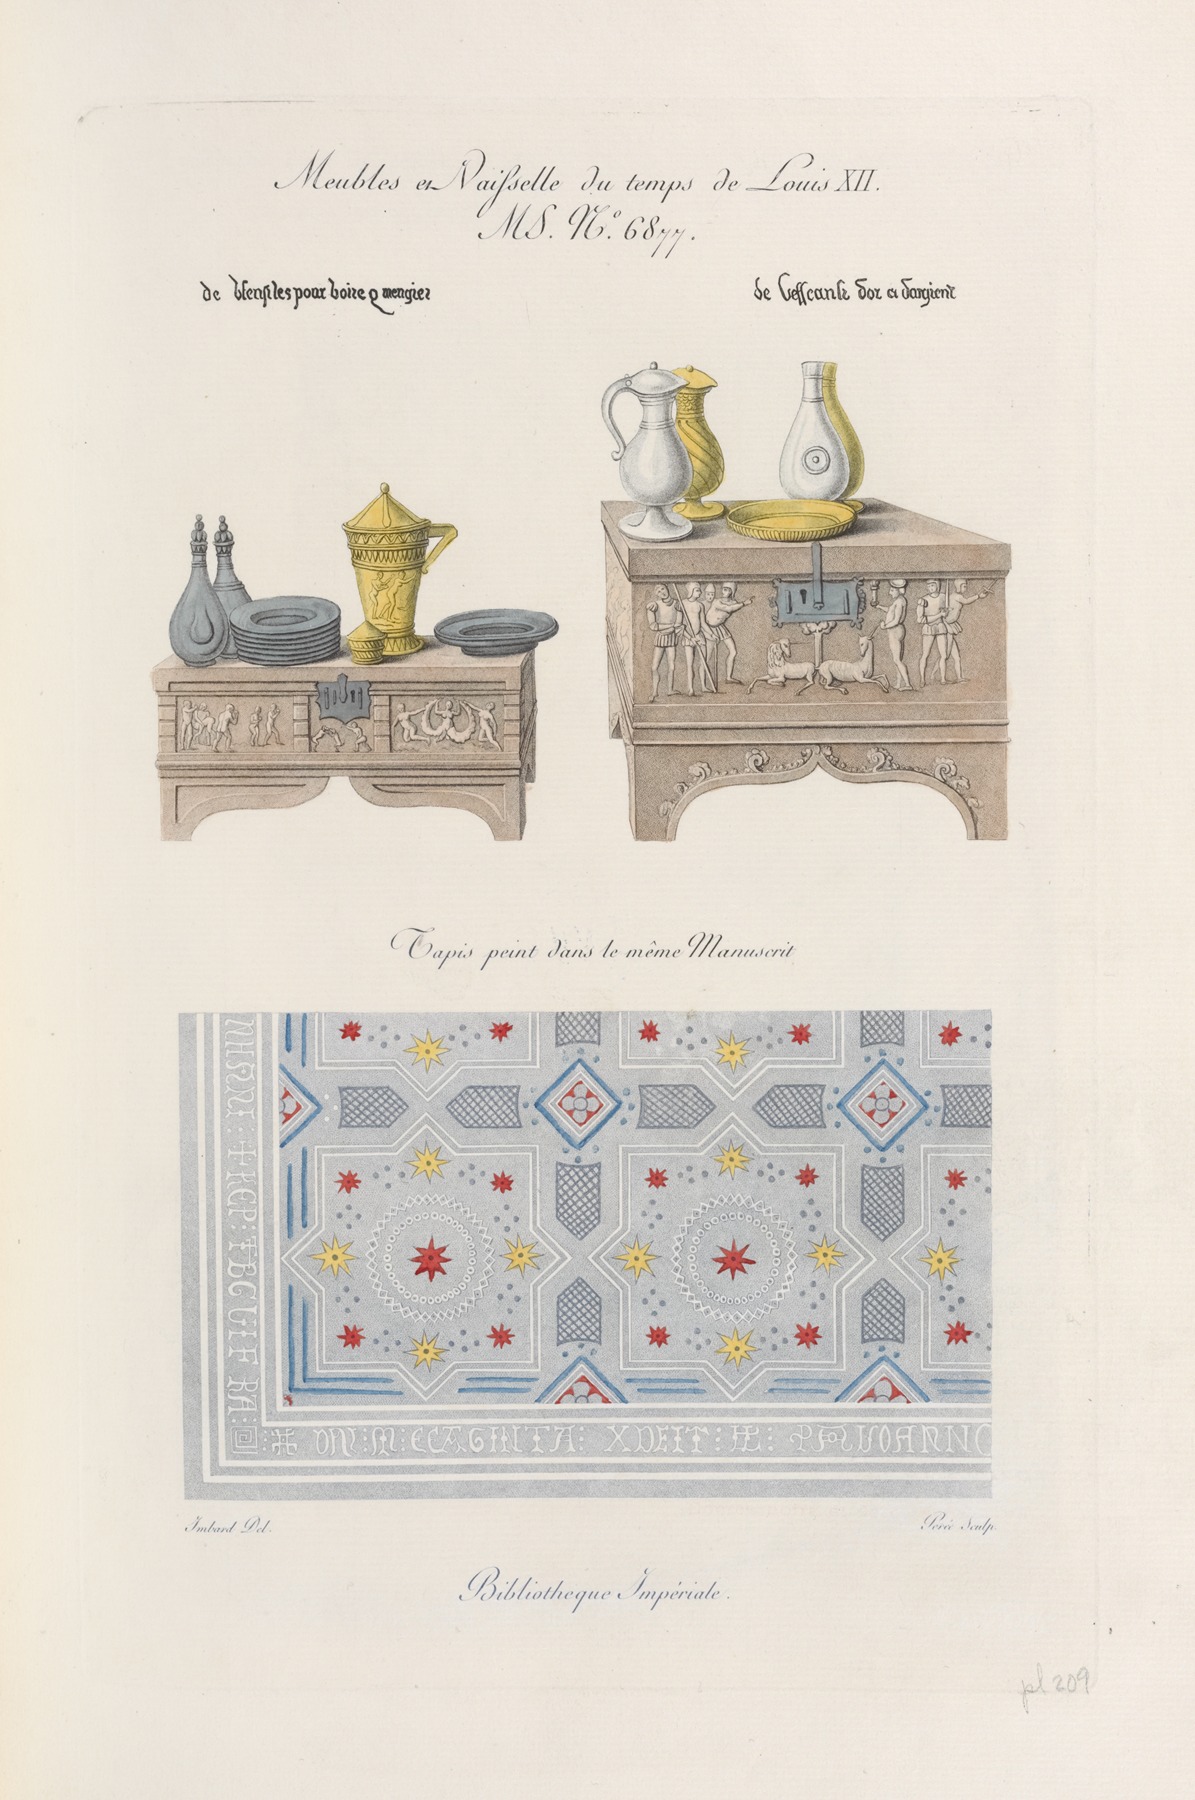 Nicolas Xavier Willemin - Meubles et vasisselle du temps de Louis XII. MS. no. 6877. […] Tapis peint dans le même manuscrit.